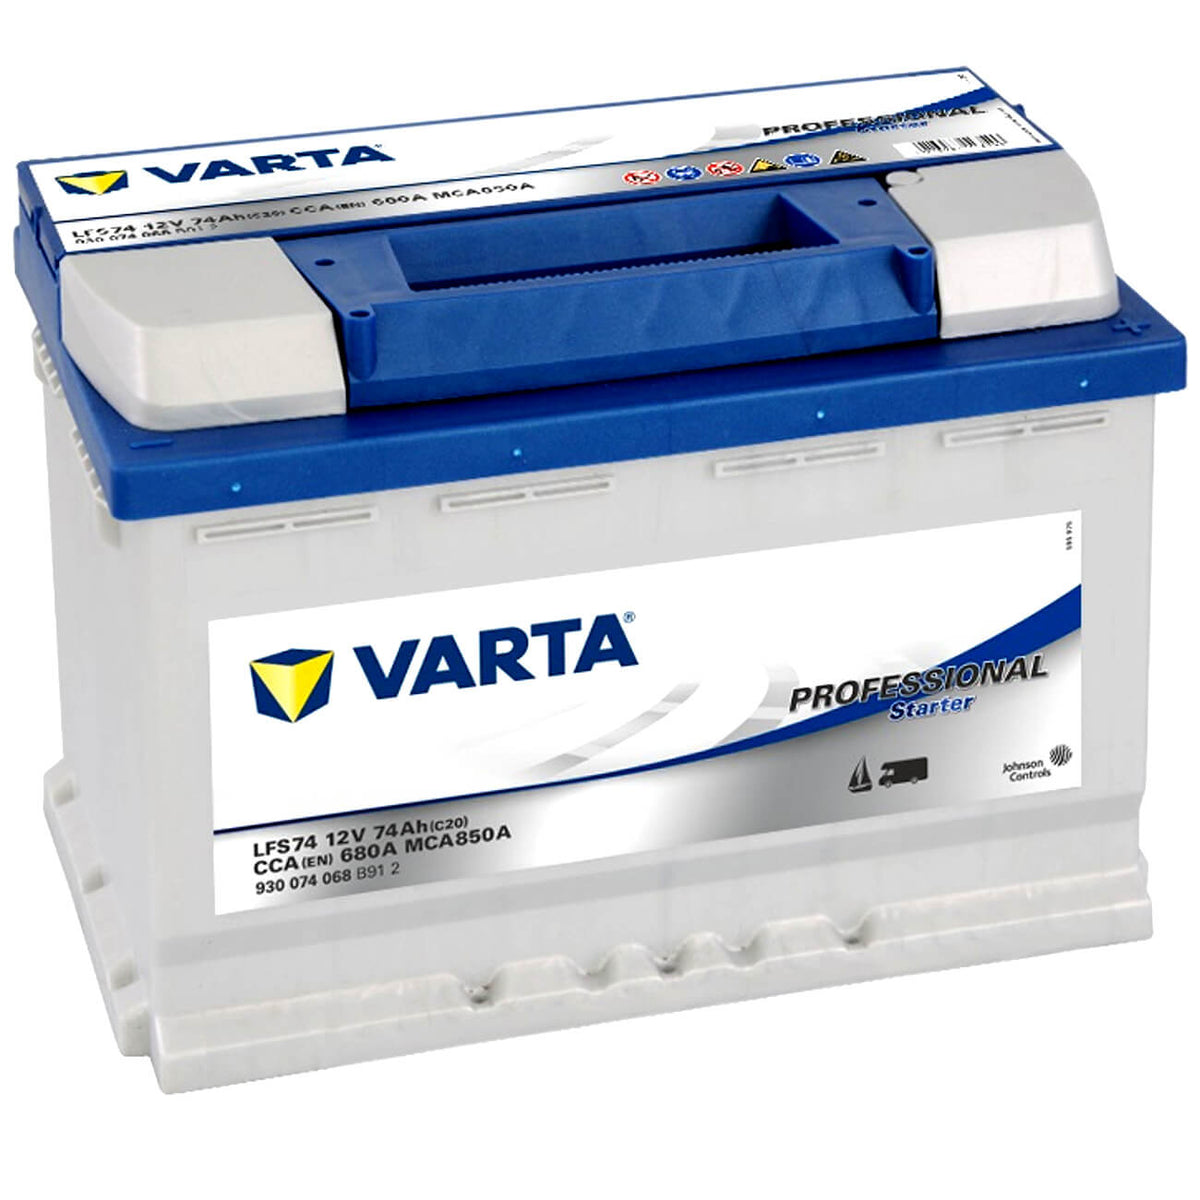 Varta Professional Starter LFS74 12V 74Ah 680A